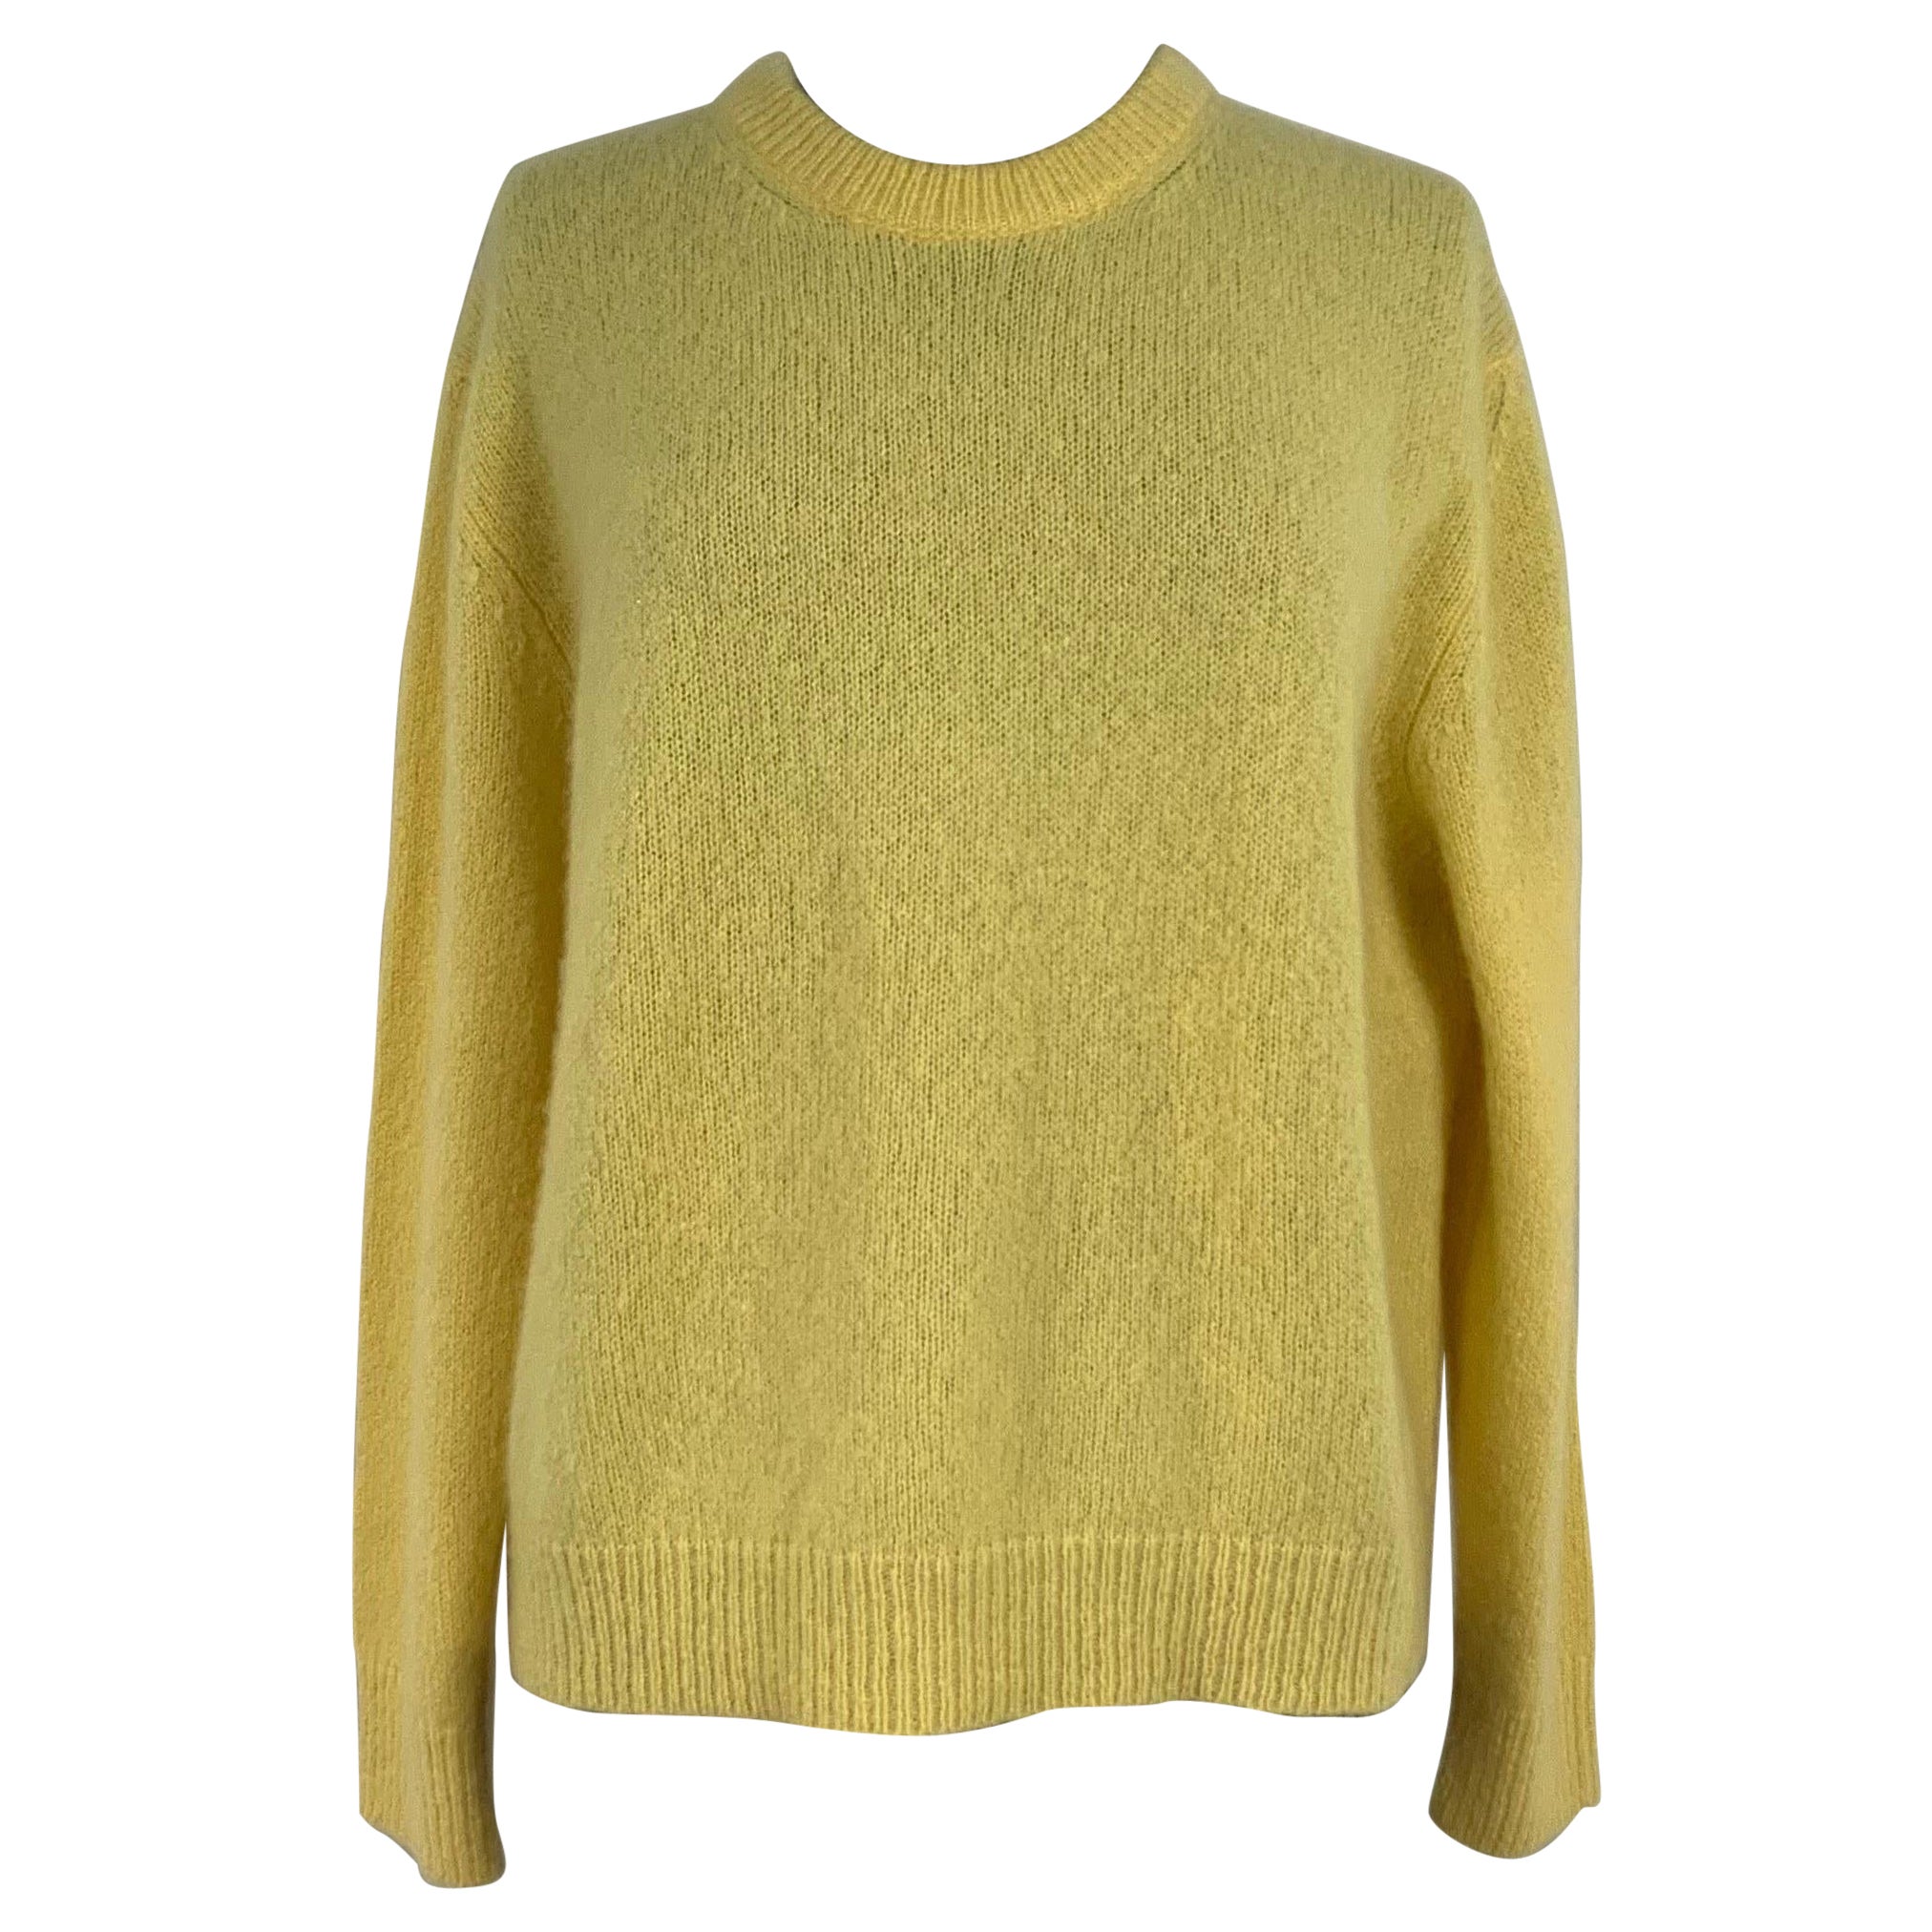 Celine yellow knitwear